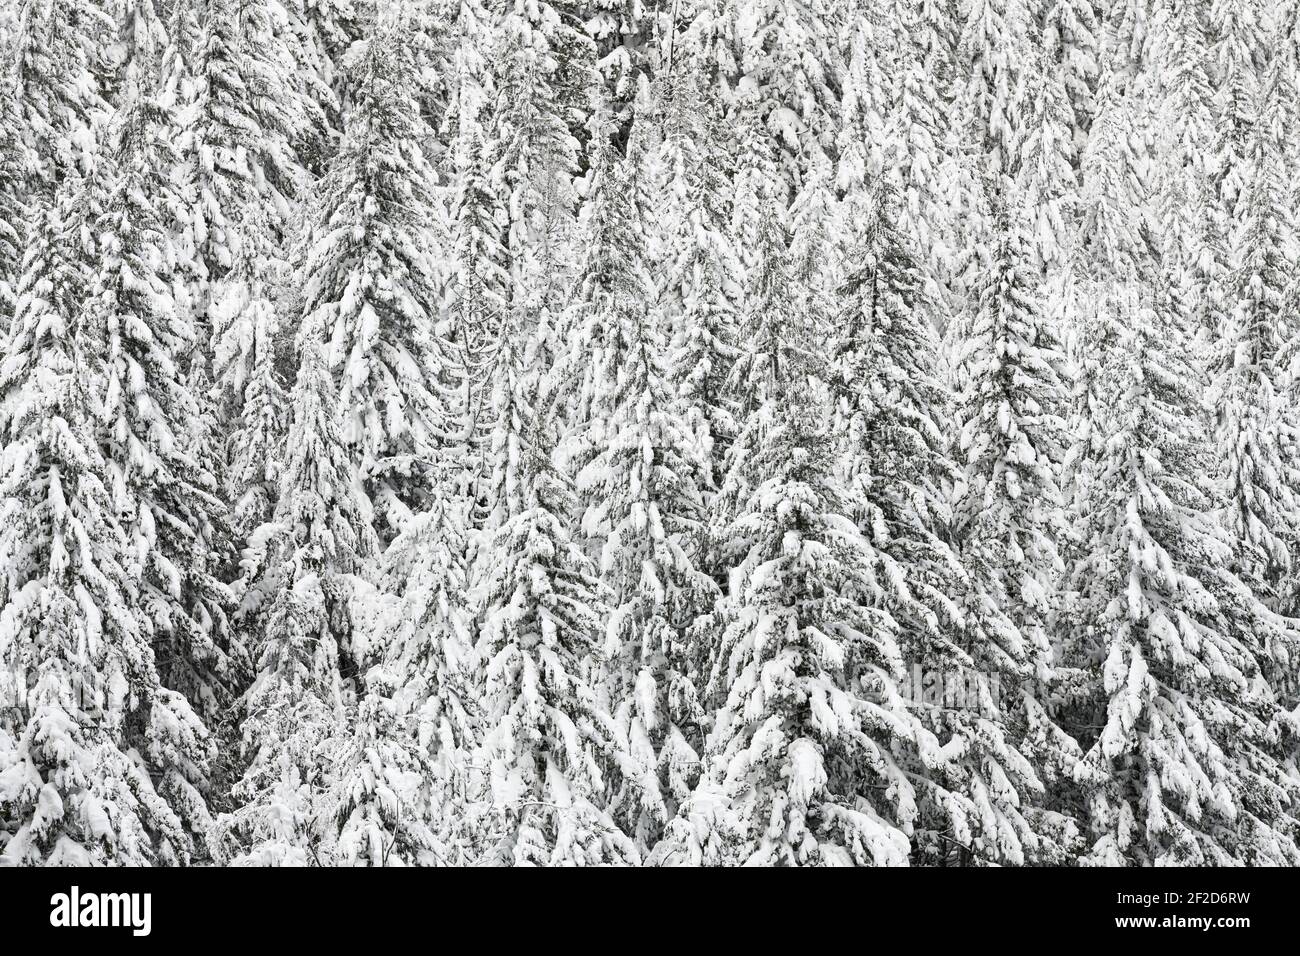 Couverture épaisse de neige neuve sur une forêt de sapins Au col Stevens dans les montagnes Cascade de l'État de Washington Banque D'Images